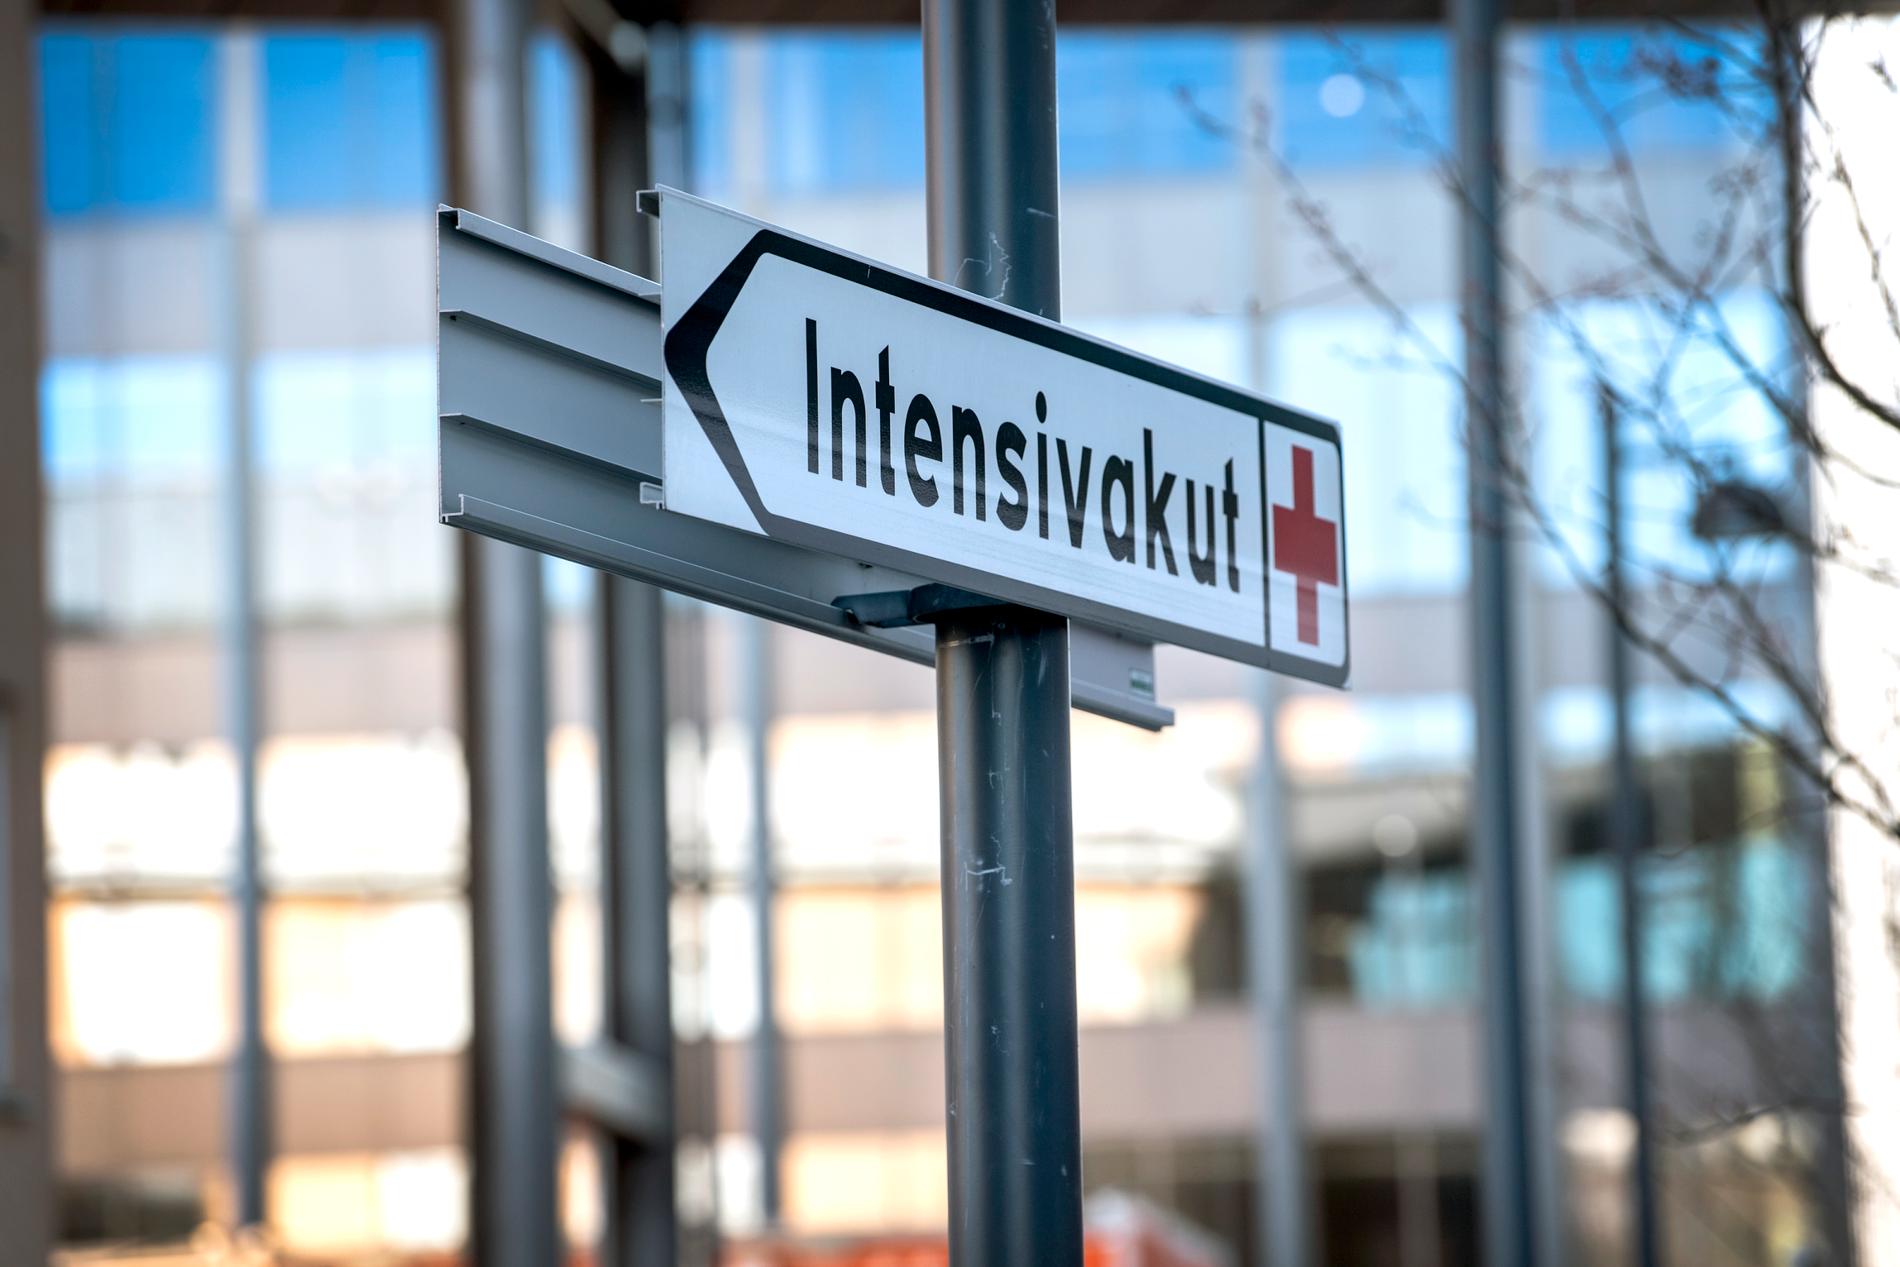  Intensivvårdsakuten vid Karolinska sjukhuset i Solna.